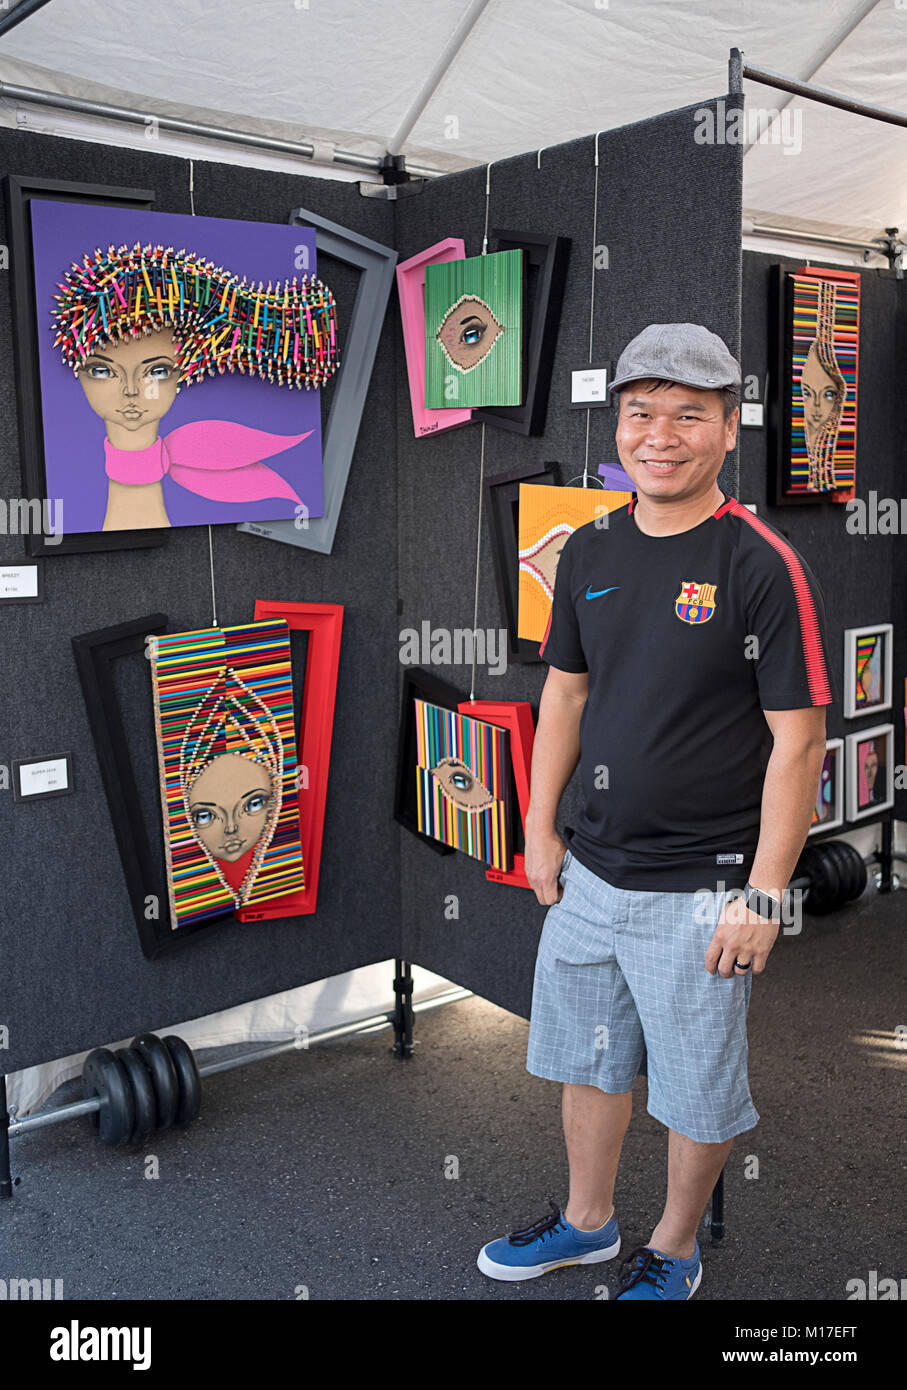 Portrait de l'artiste chinoise Tshun Sip Ng qui utilise des crayons de couleurs dans son travail. Lors d'une foire d'art en plein air dans Dleray Beach, en Floride. Banque D'Images